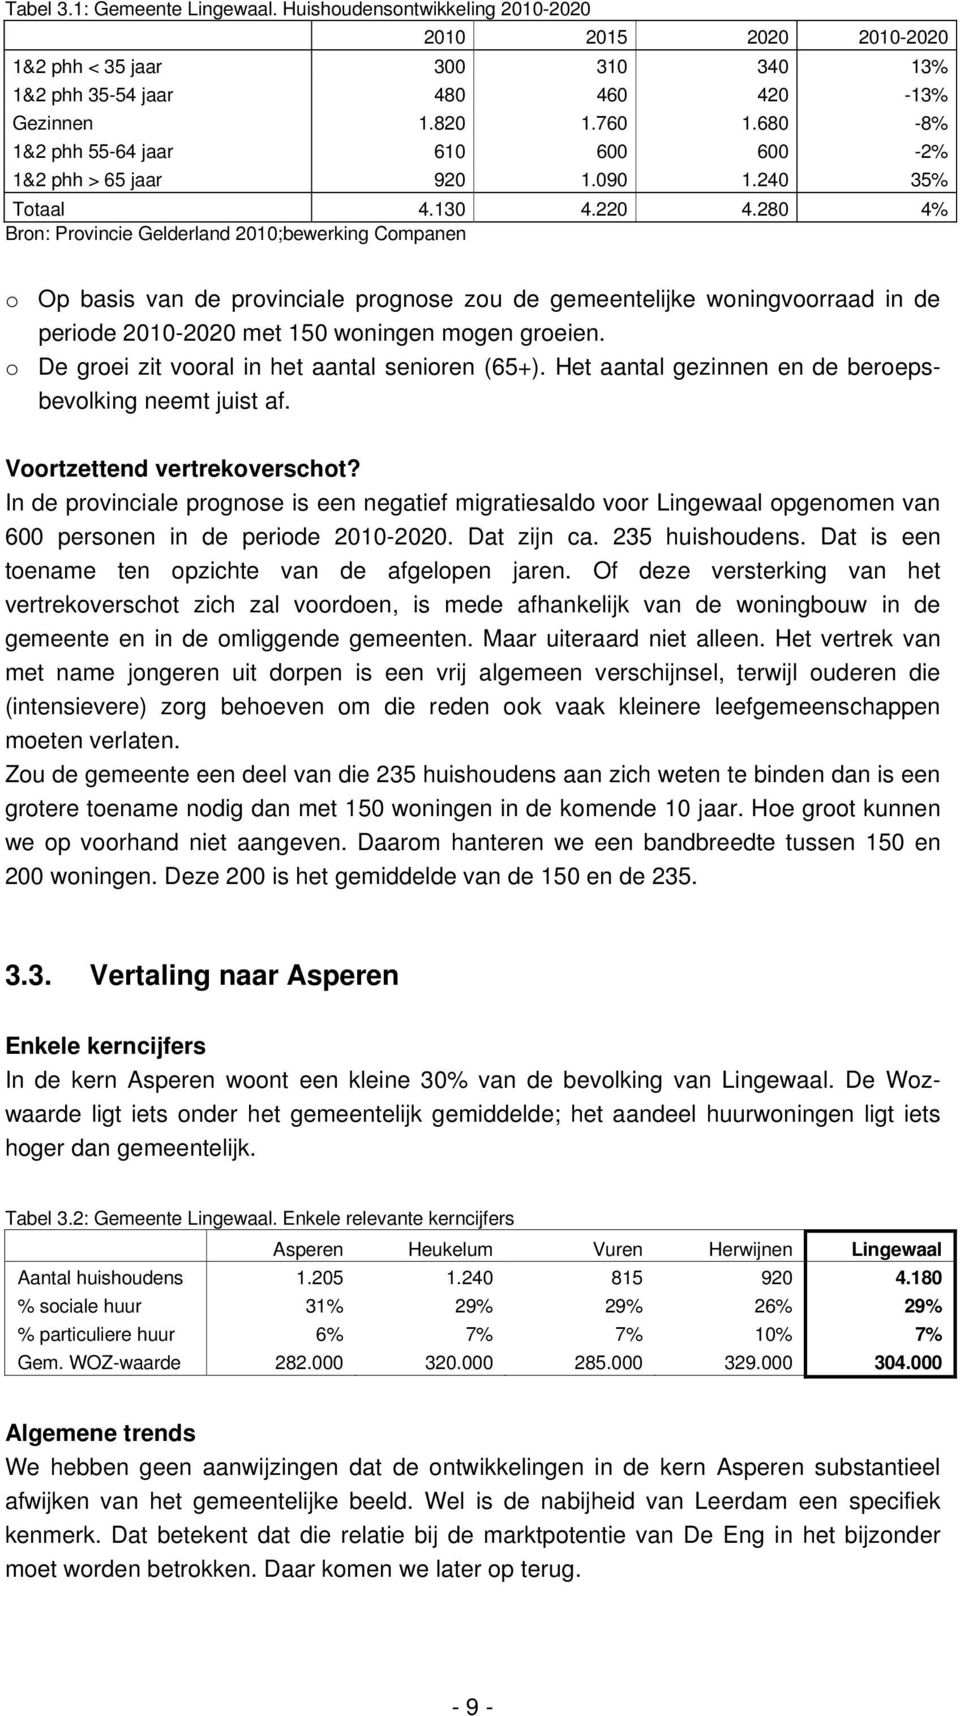 280 4% Bron: Provincie Gelderland 2010;bewerking Companen o Op basis van de provinciale prognose zou de gemeentelijke woningvoorraad in de periode 2010-2020 met 150 woningen mogen groeien.